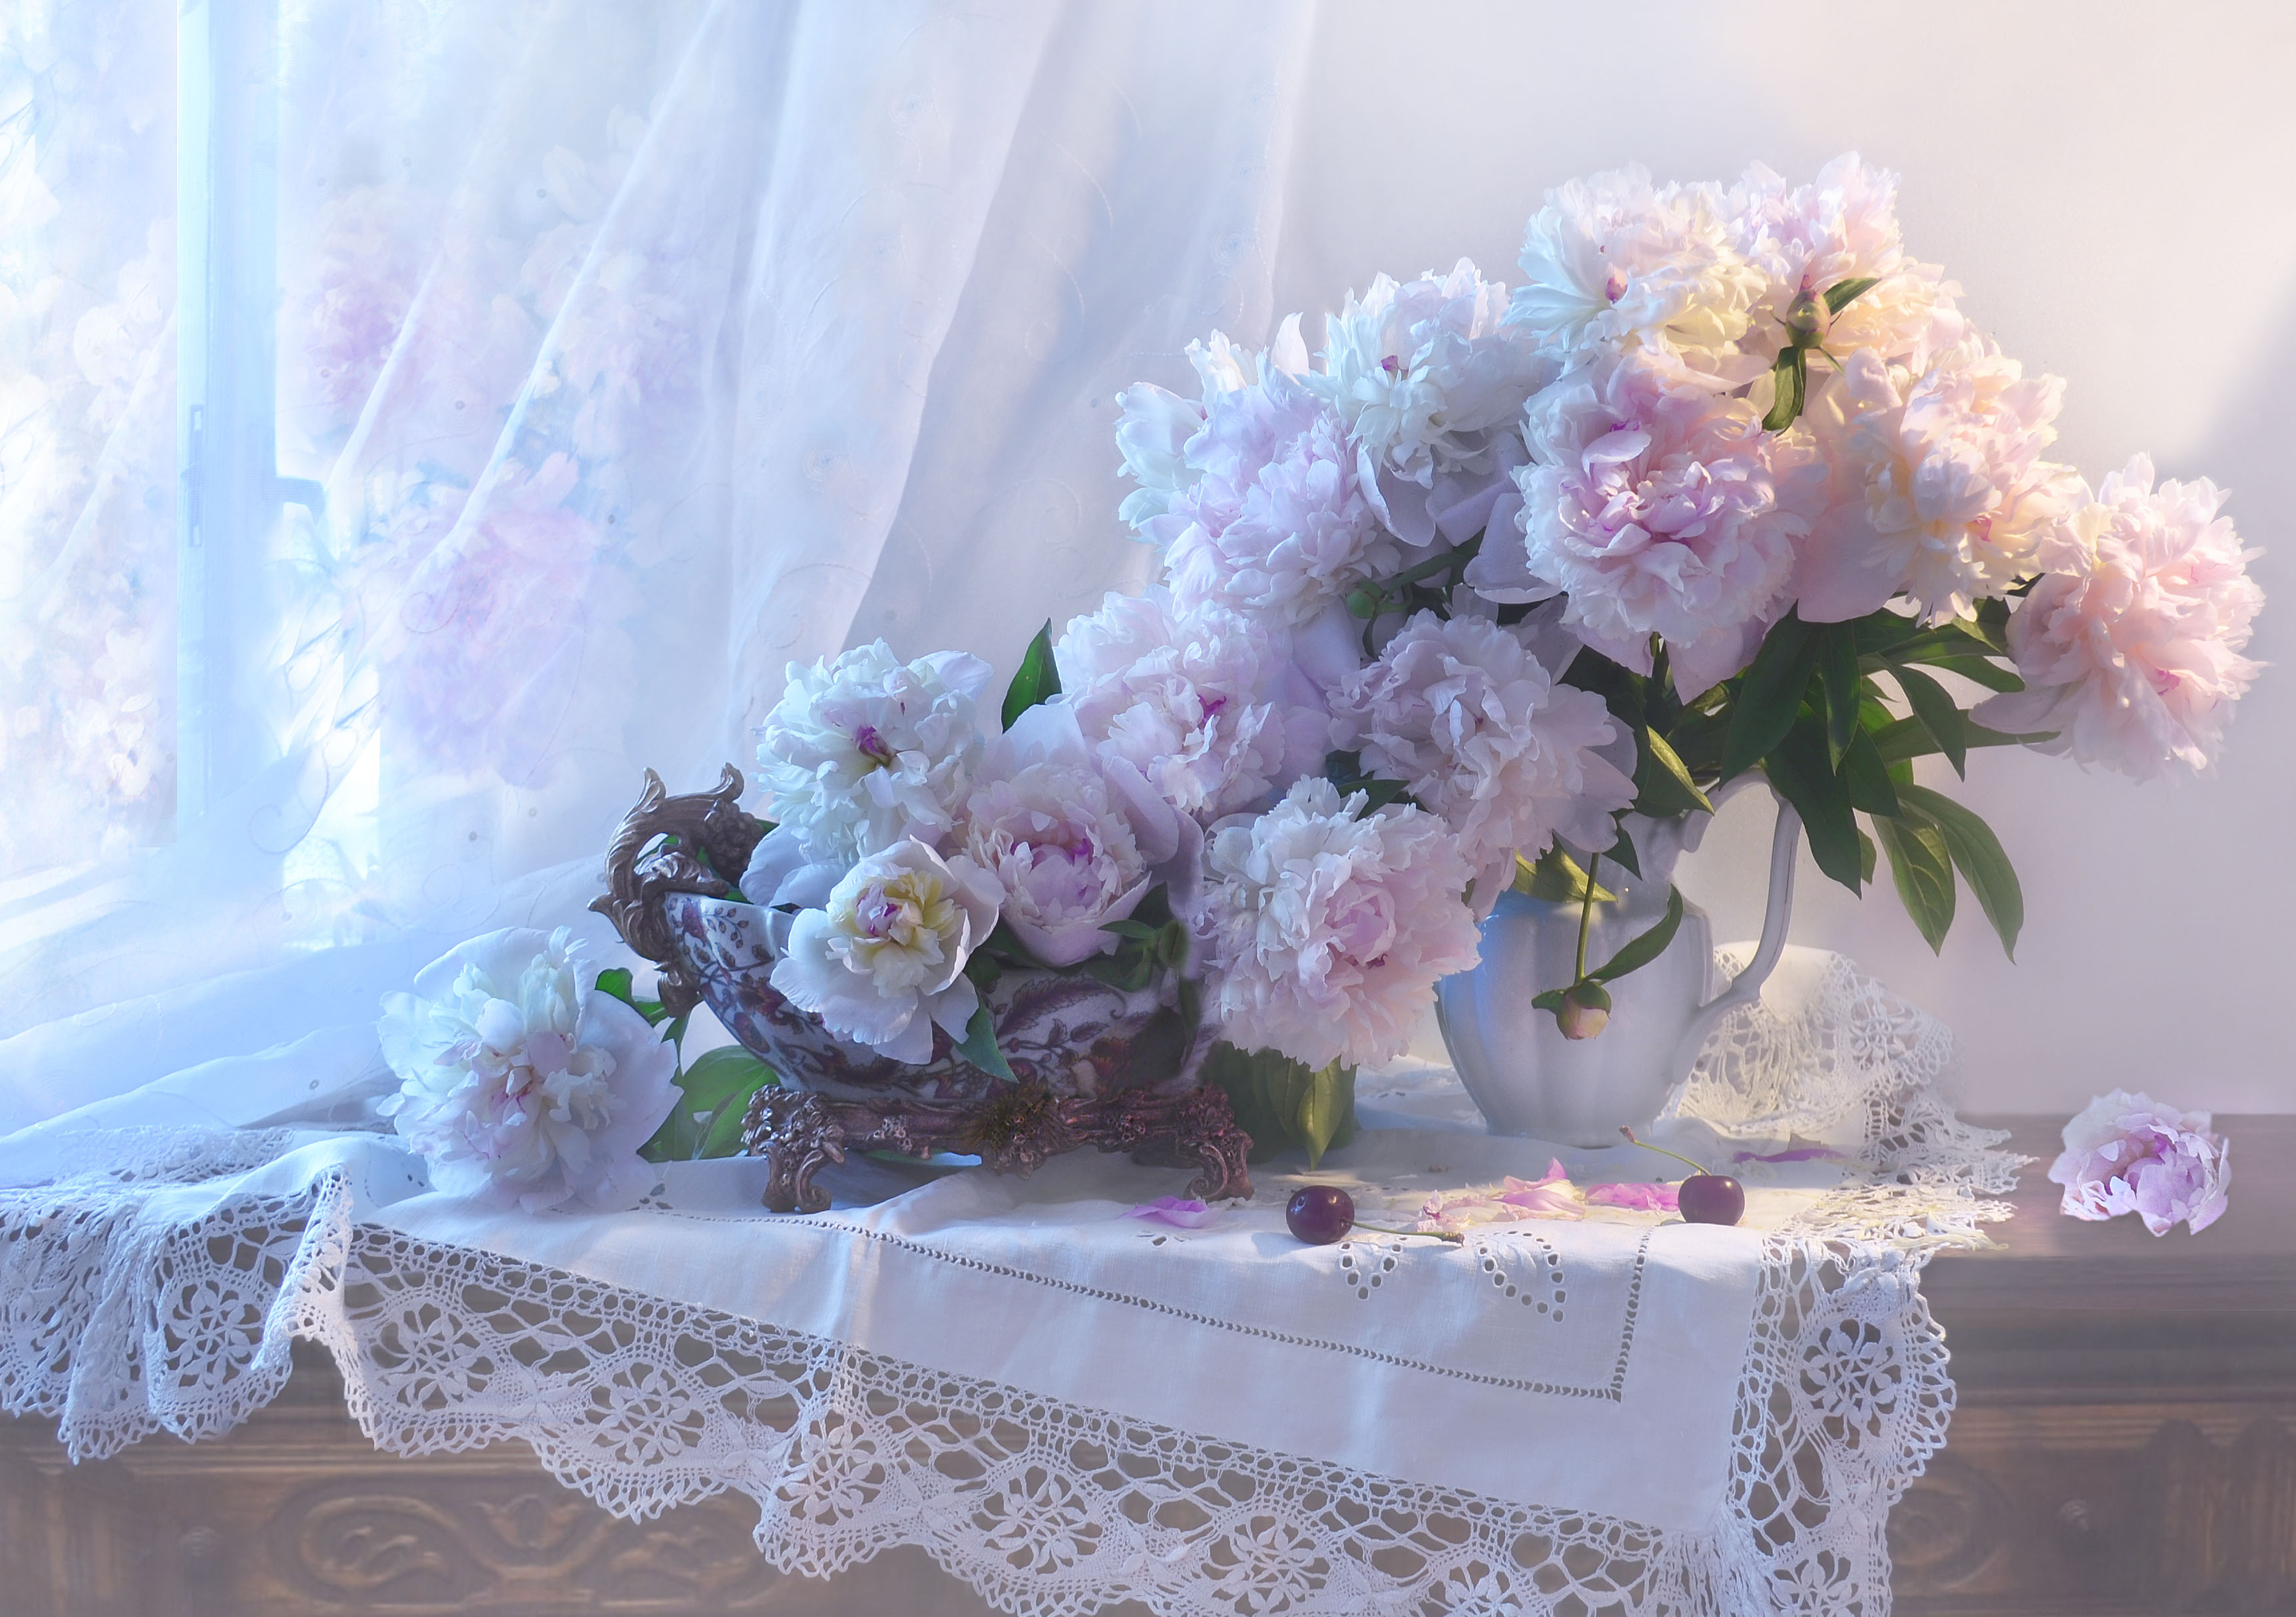 Картинка с цветами на столе. Пионы Валентины Коловой. Цветы на окне.